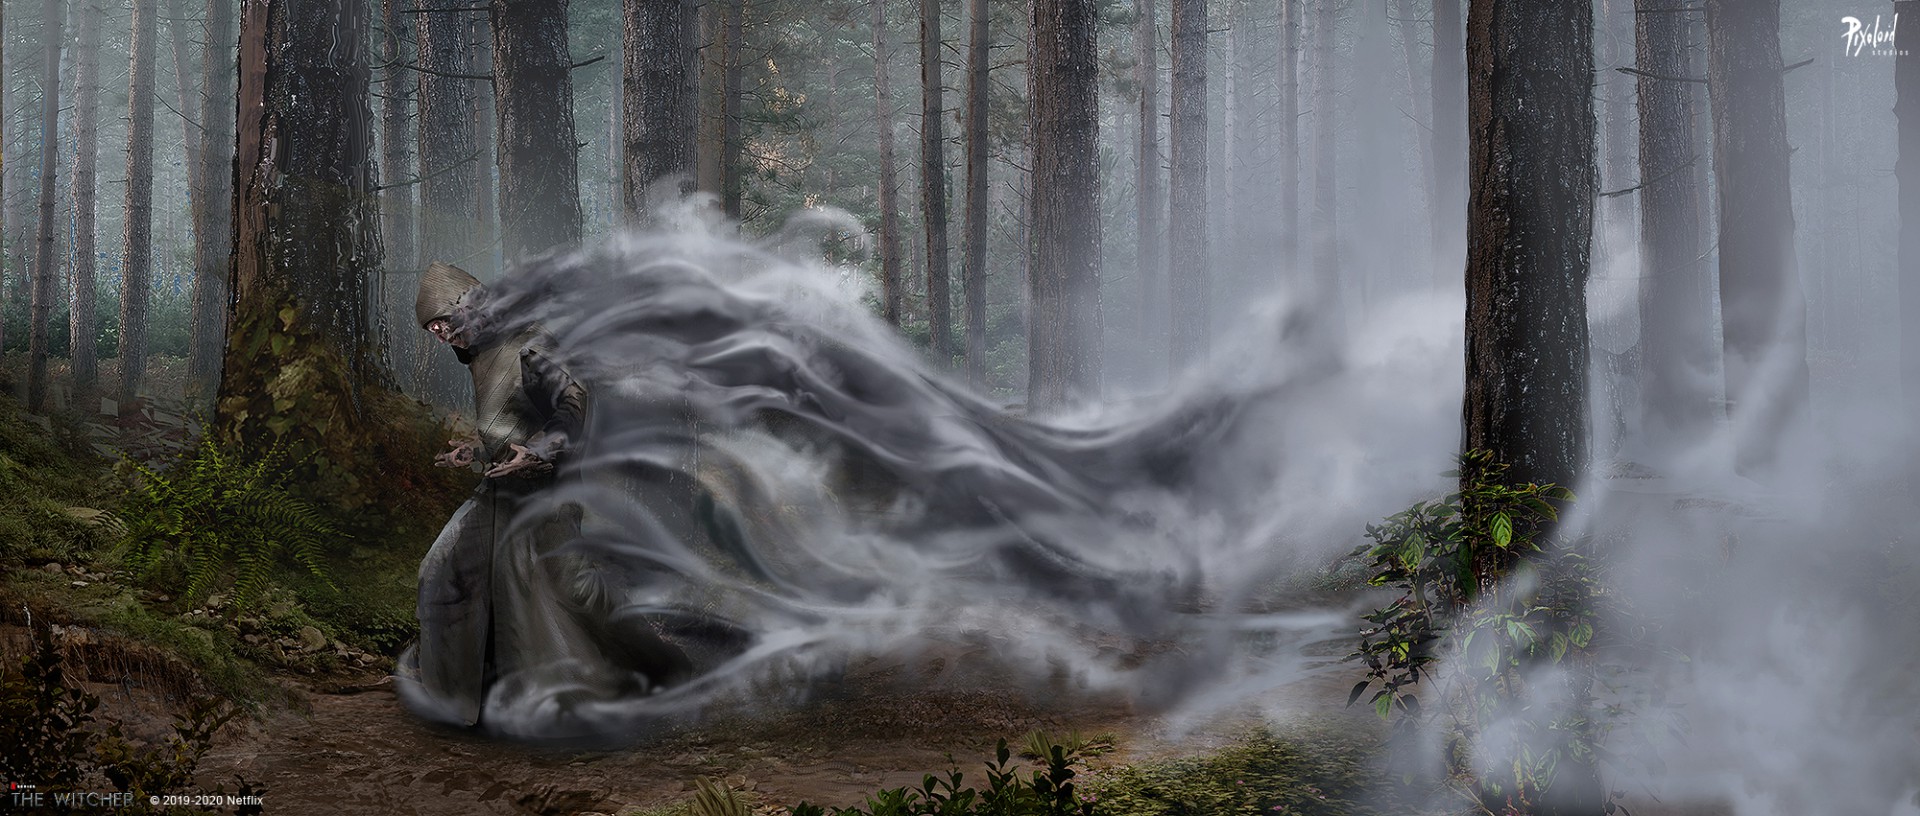 《巫师》电视剧艺术概念图 树精矮人精灵形象欣赏